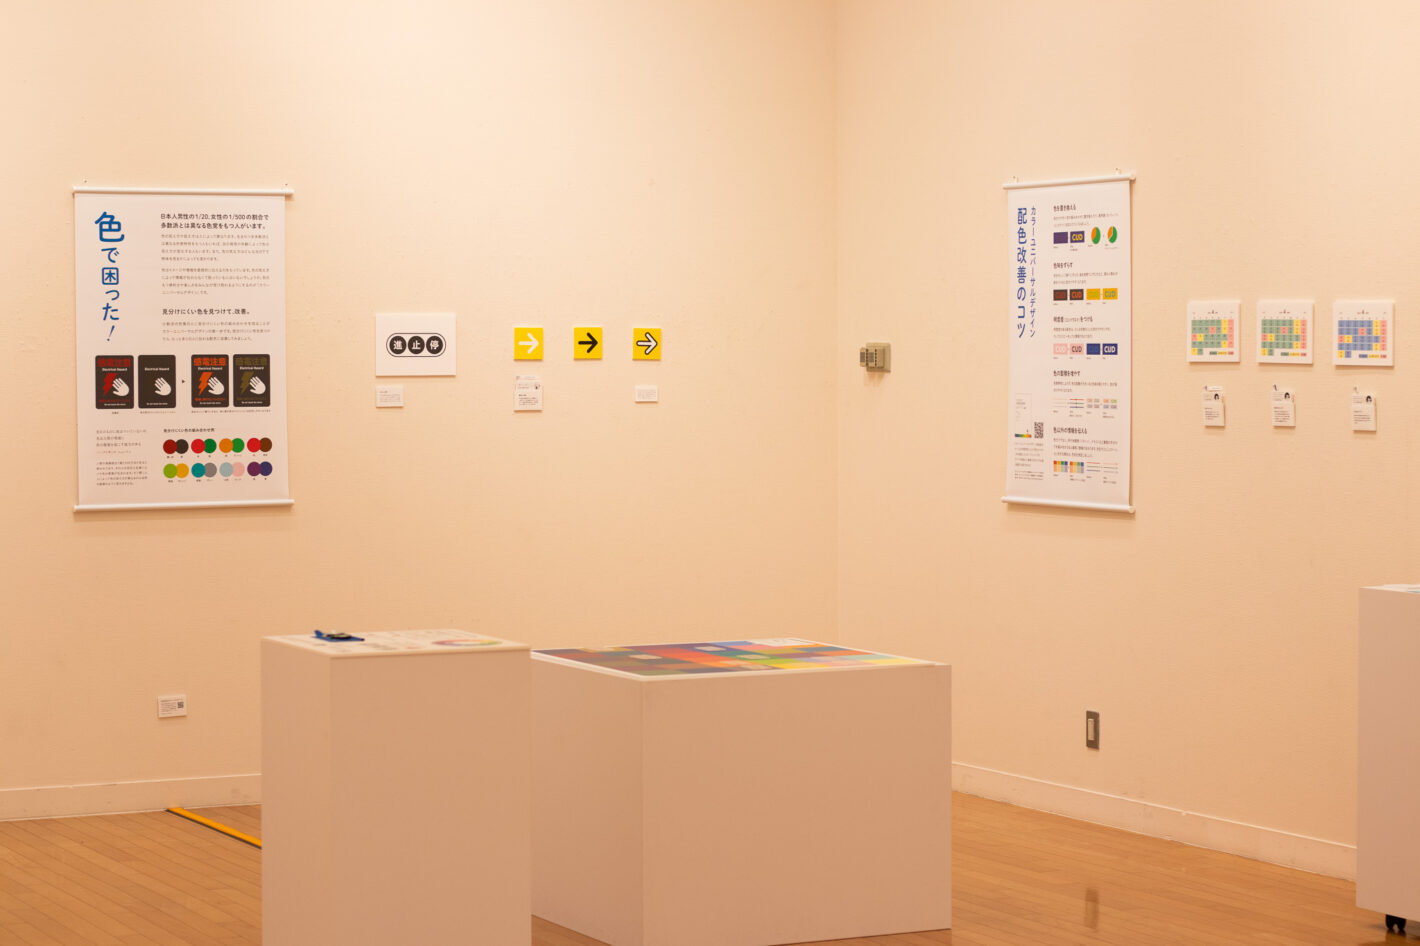 写真：「色で困った！」と「カラーユニバーサルデザイン配色改善のコツ」というタペストリーが壁にかかっています。黄色い矢印やカレンダーのパネルがタペストリーの間に展示されています。手前に白いブロック状の展示台が2つあります。